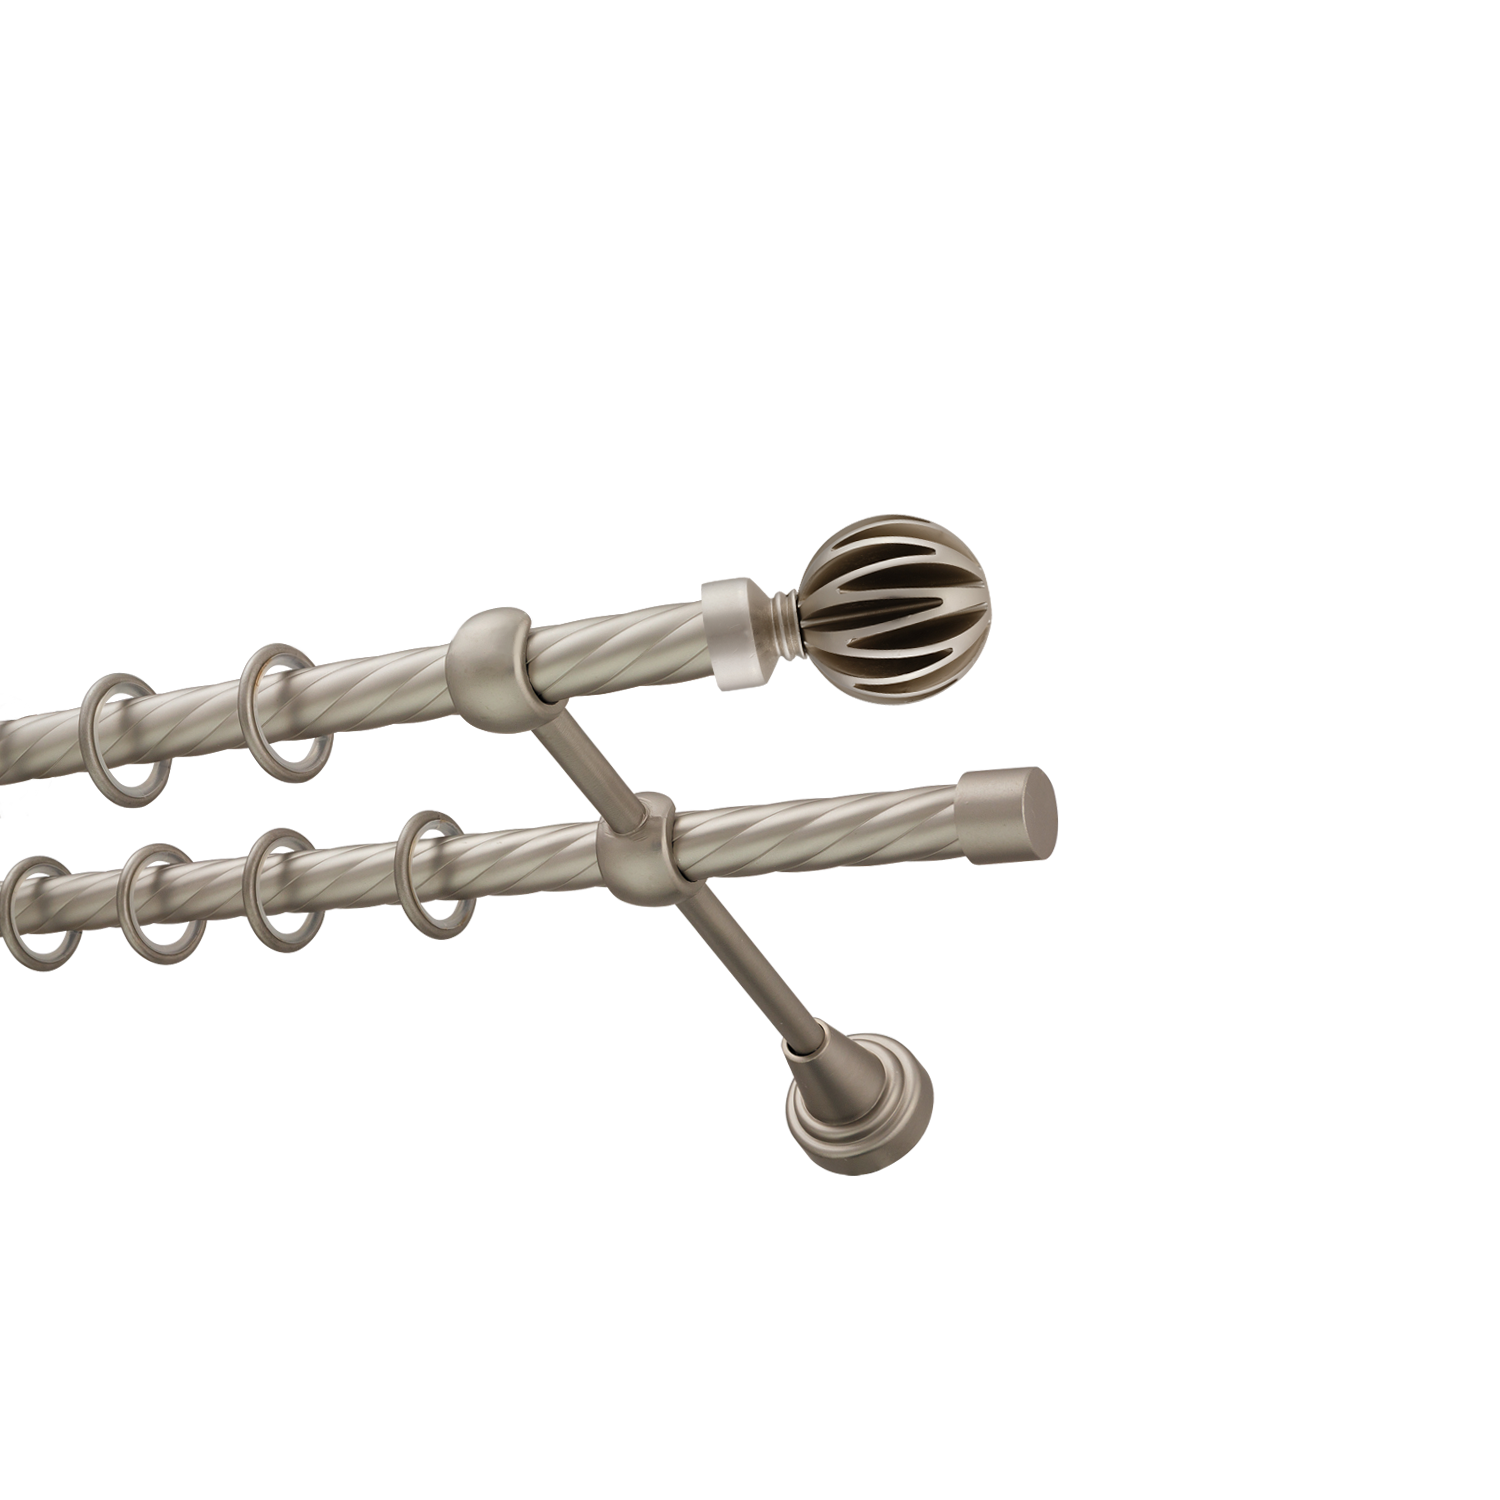 Металлический карниз для штор Шафран, двухрядный 16/16 мм, сталь, витая штанга, длина 140 см